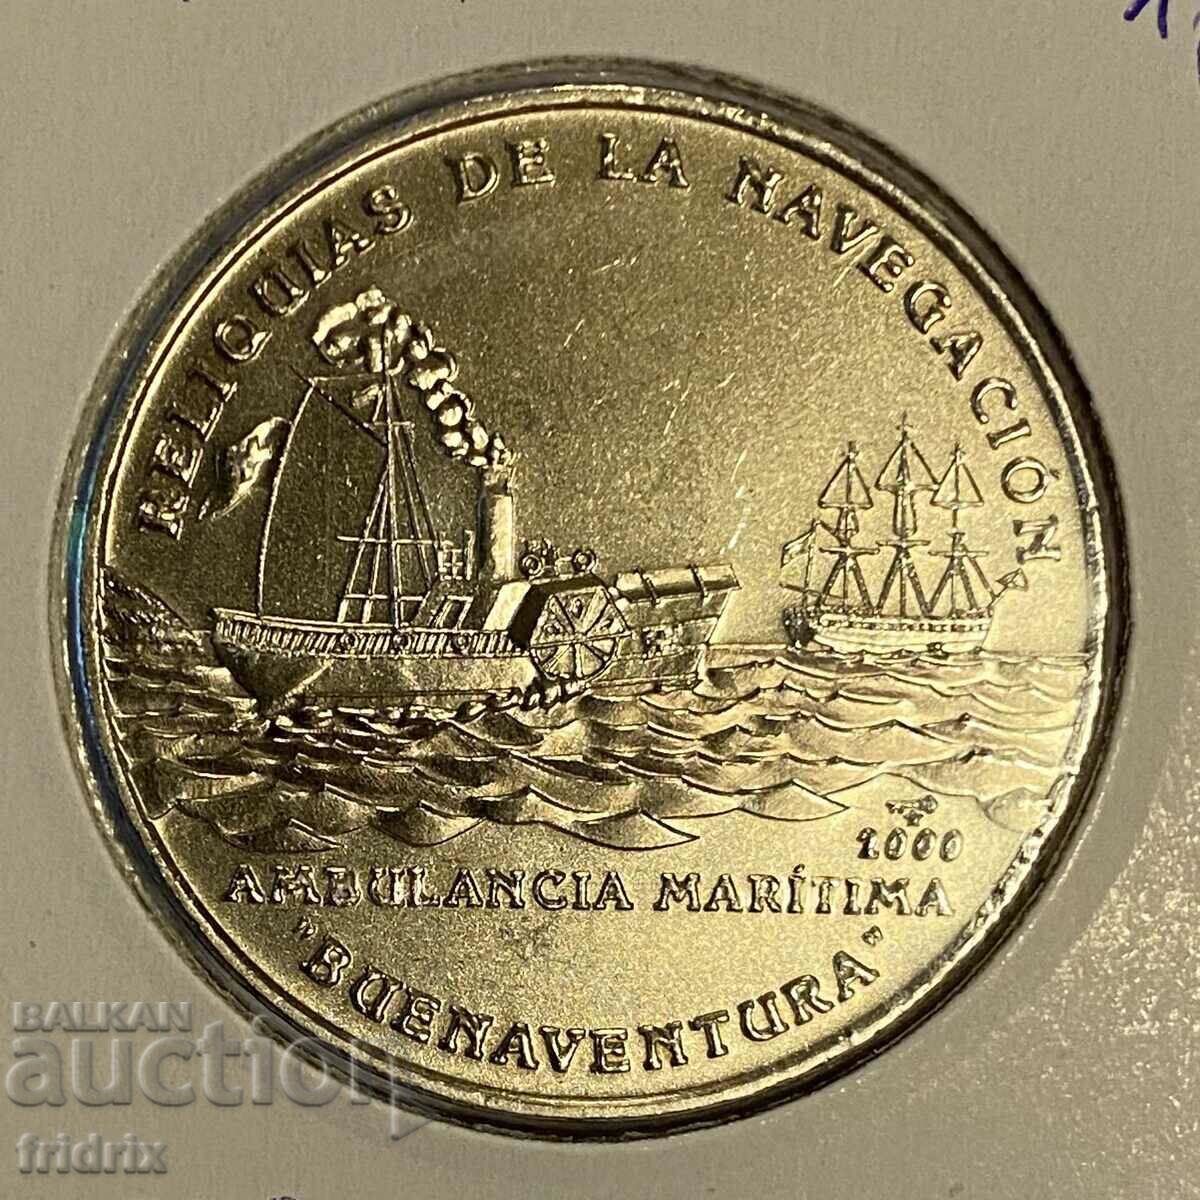 Cuba 1 peso yub. corbi / Cuba 1 peso 2000